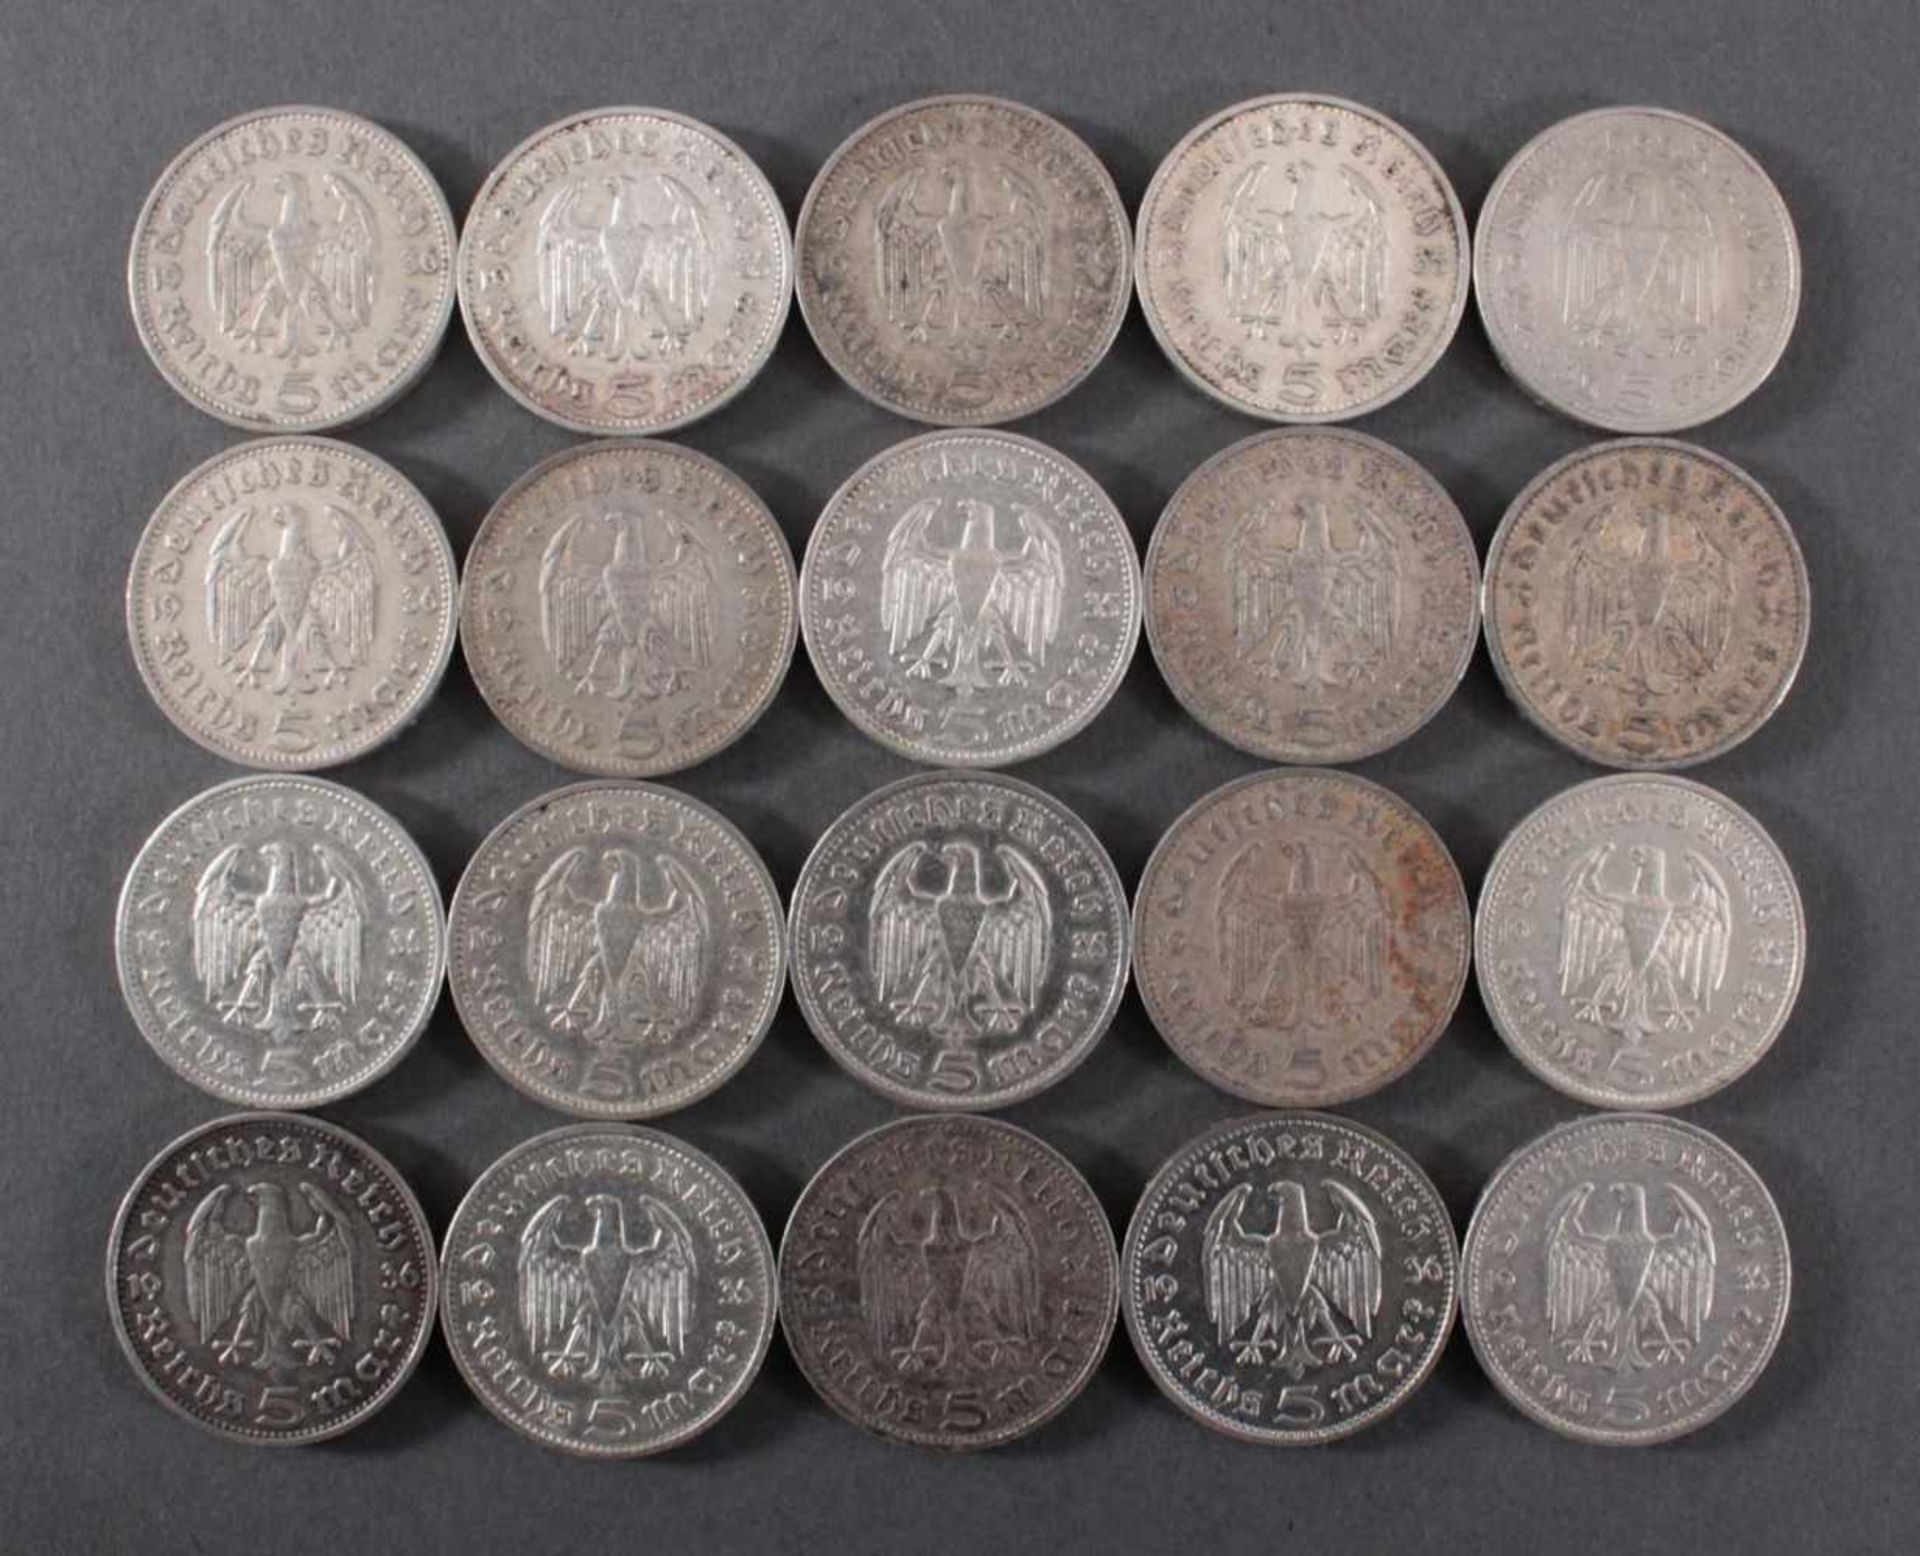 Deutsches Reich, 20x 5 ReichsmarkSilber, 10x 5 Reichsmark 1936 D und 10x 5 Reichsmark 1935 H - Bild 2 aus 2